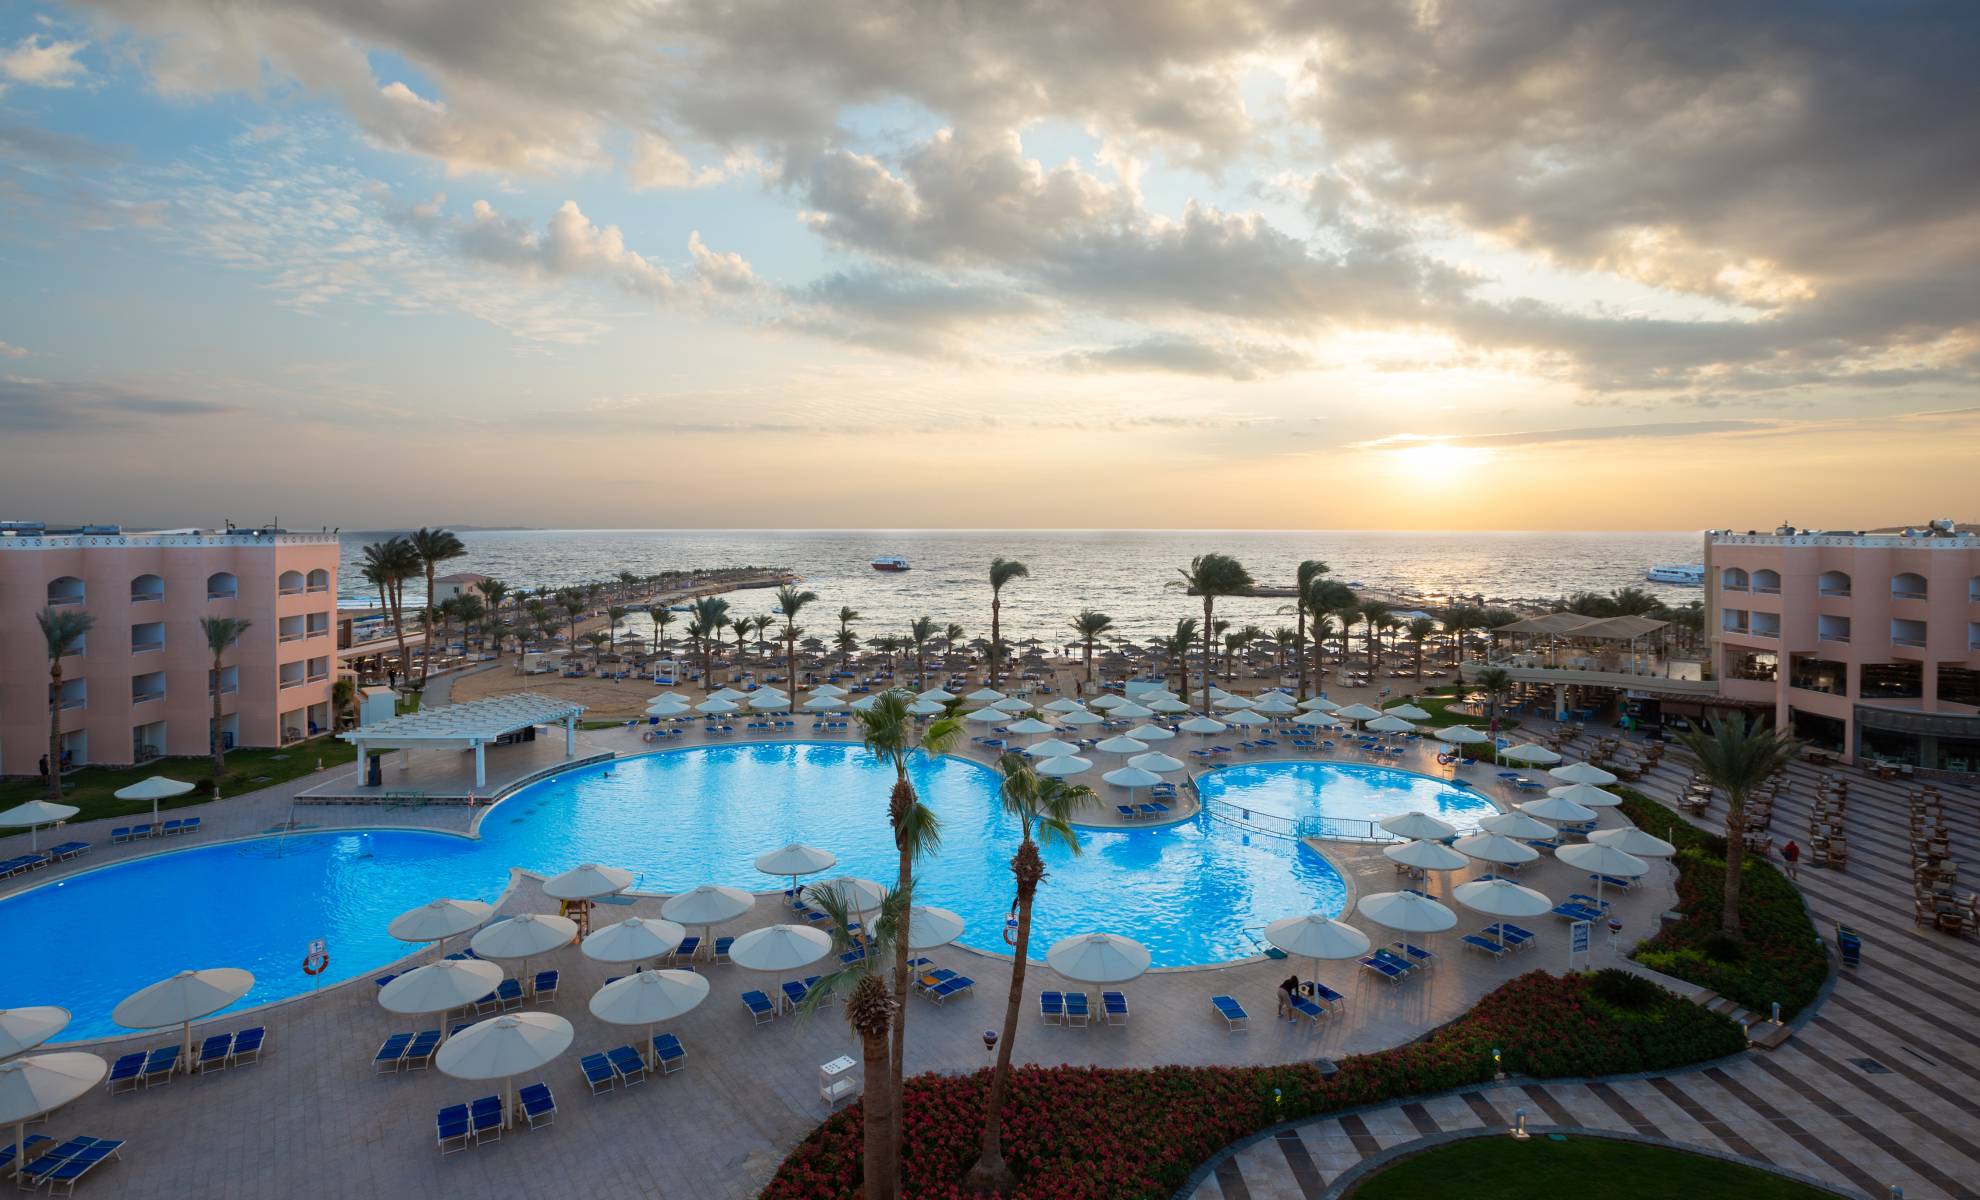 Серри хургада. Бич Альбатрос Резорт Египет. Альбатрос Хургада 4. Отель Beach Albatros Resort 4. Beach Albatros Resort Hurghada 5 Хургада.